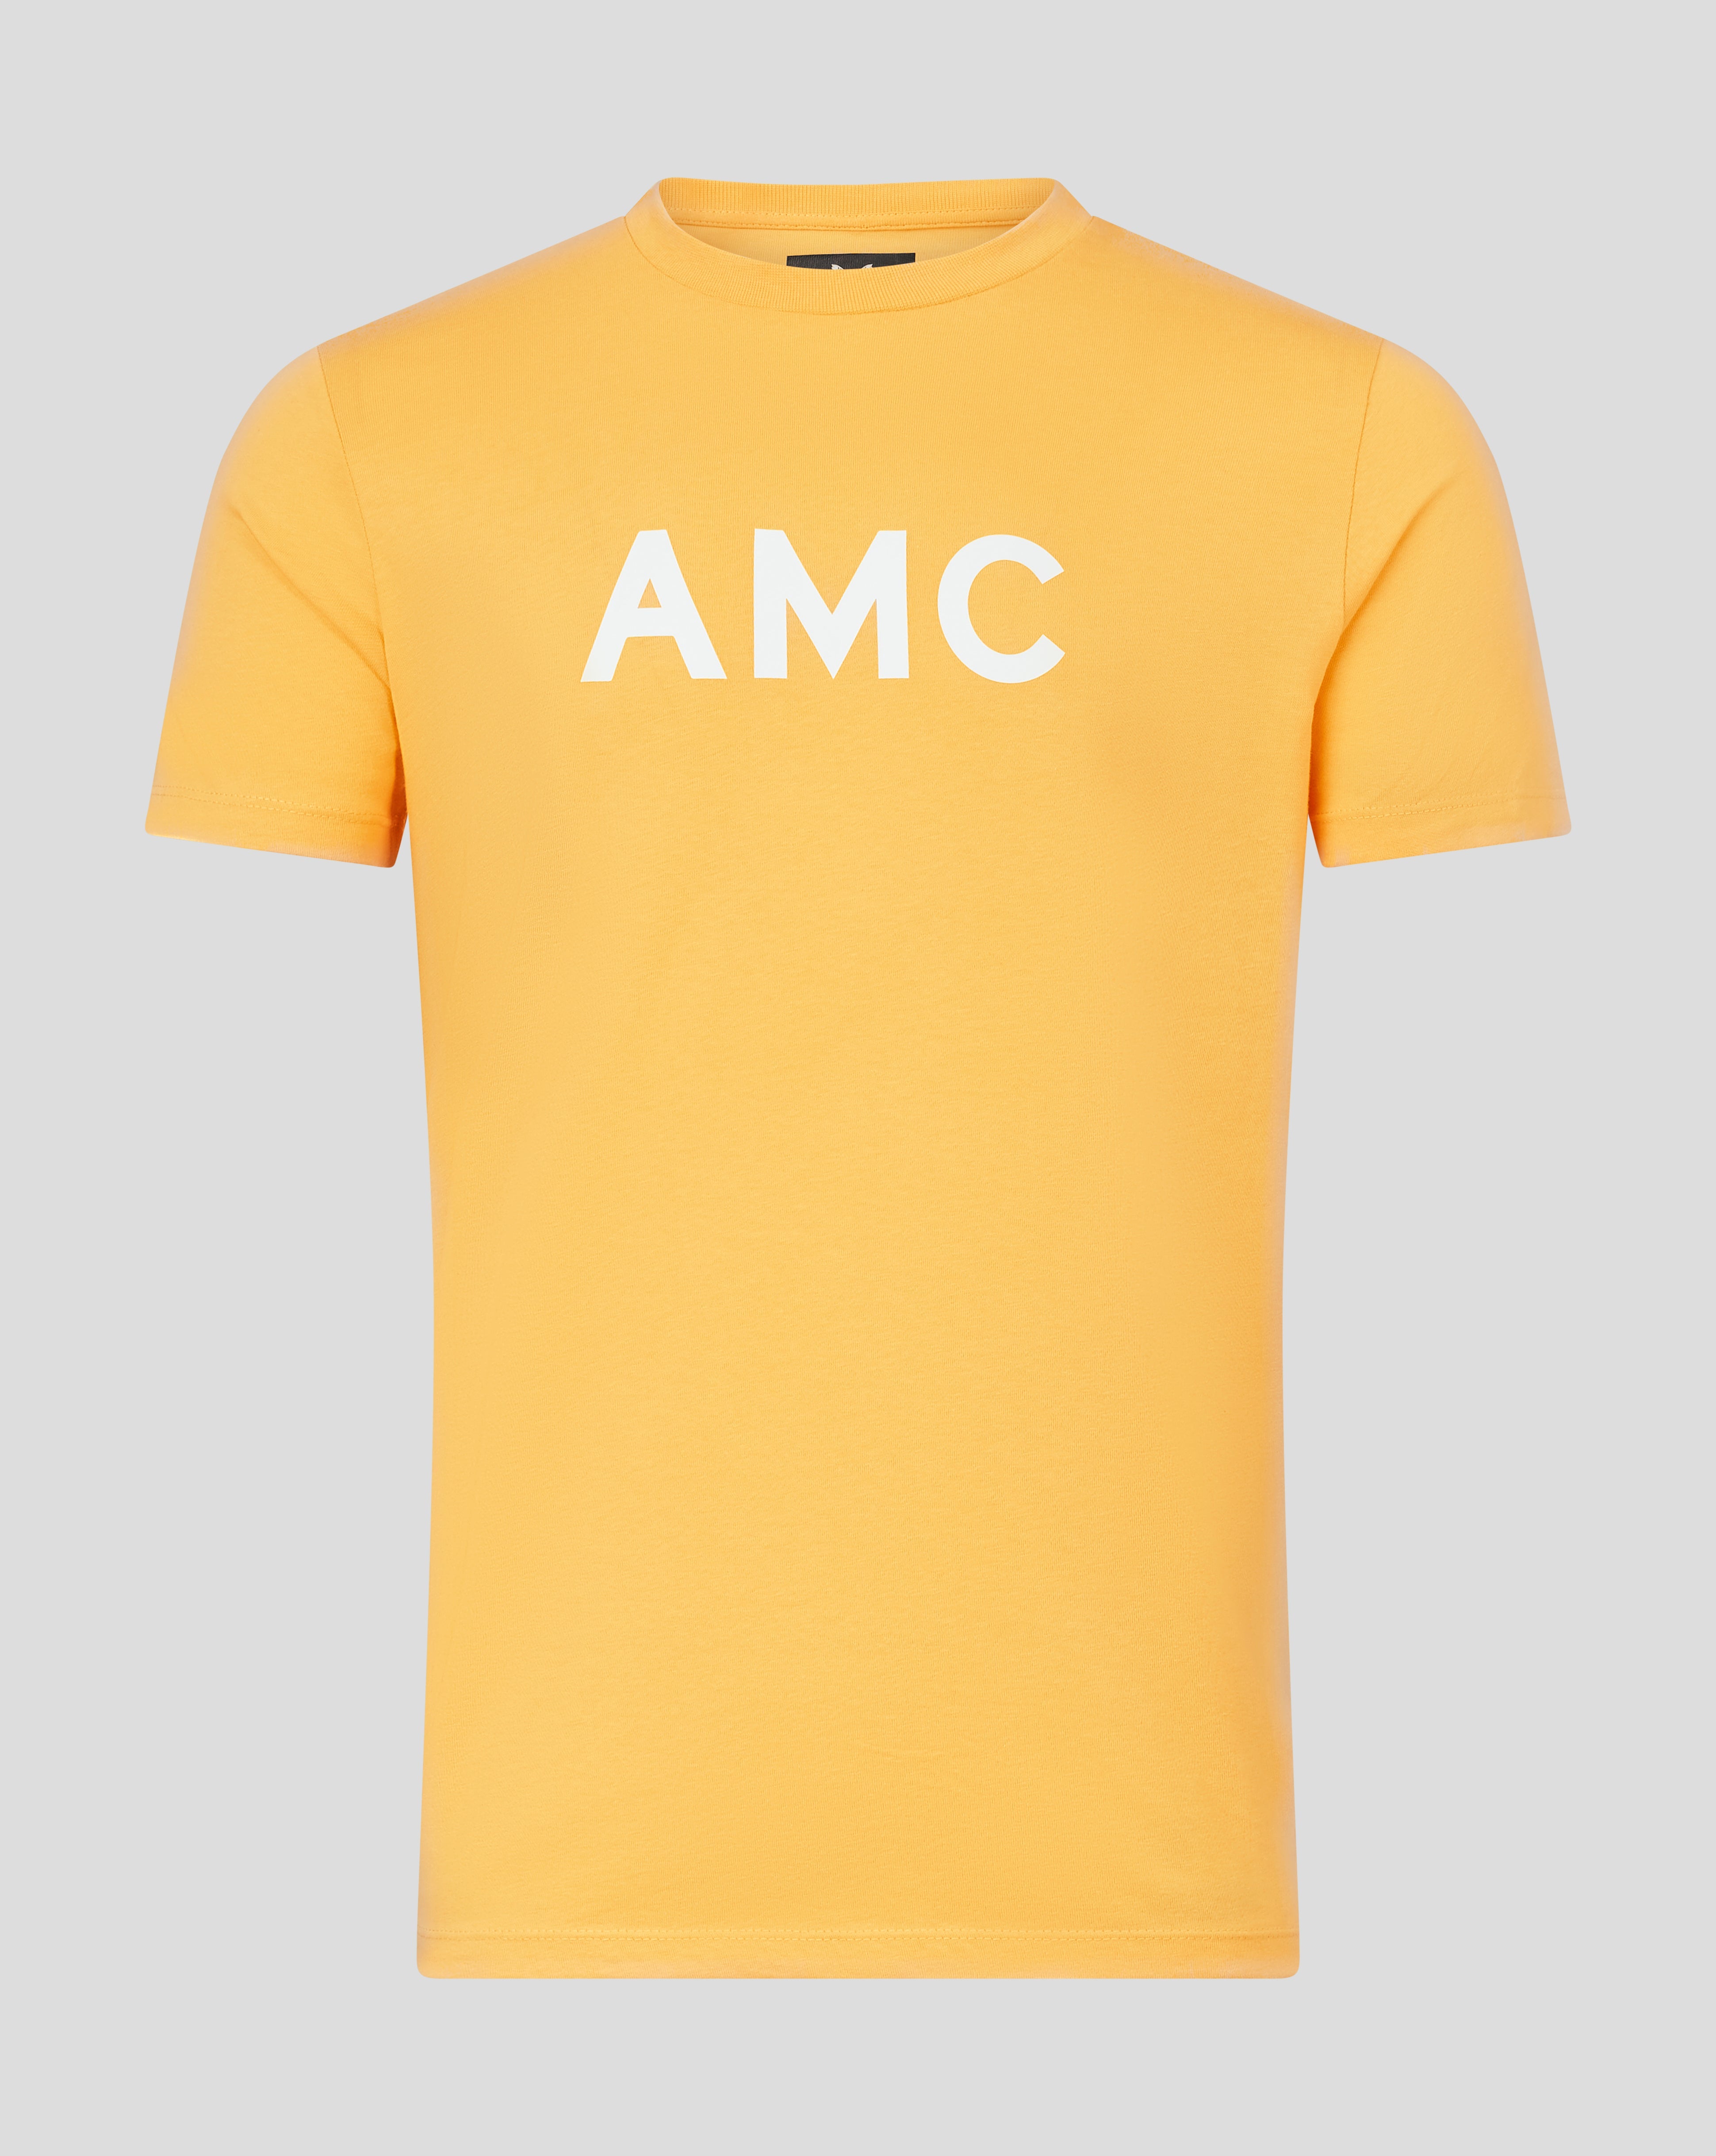 MEN'S AMC TENNIS CLOTHING – Castore ME